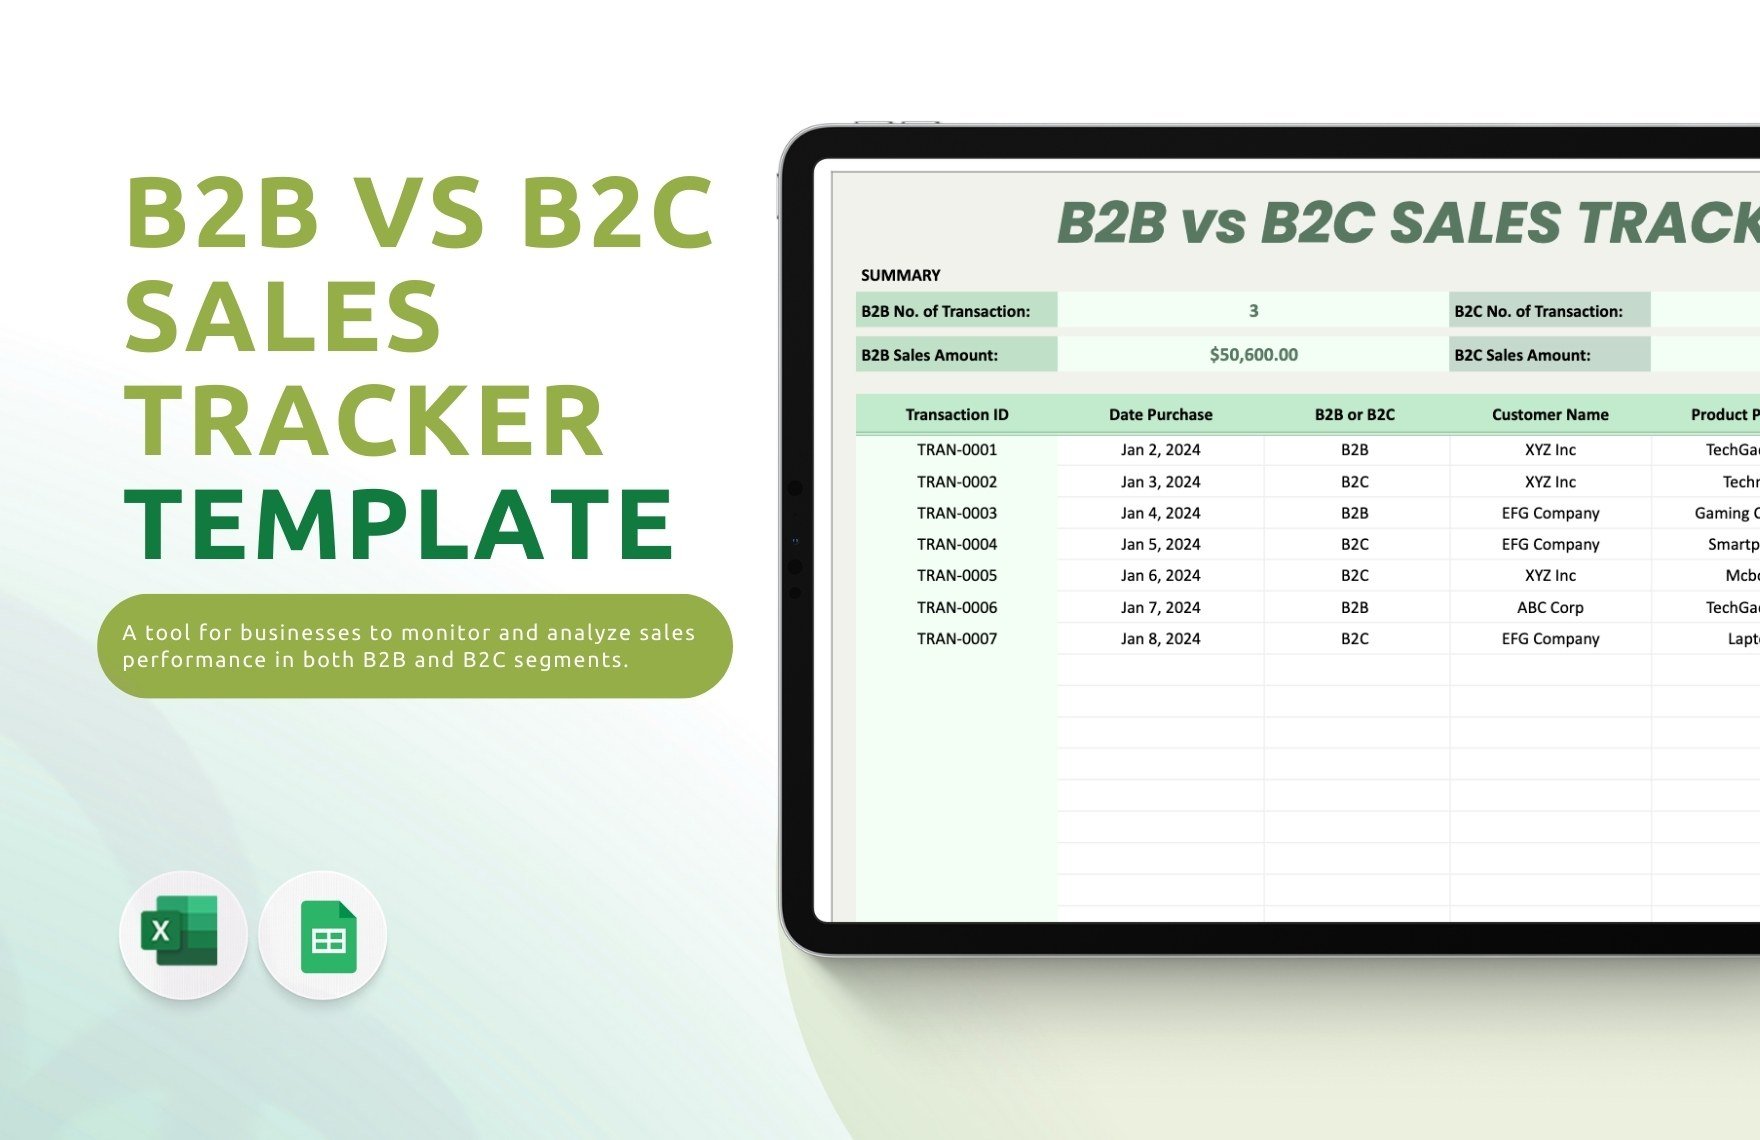 B2B vs B2C Sales Tracker Template